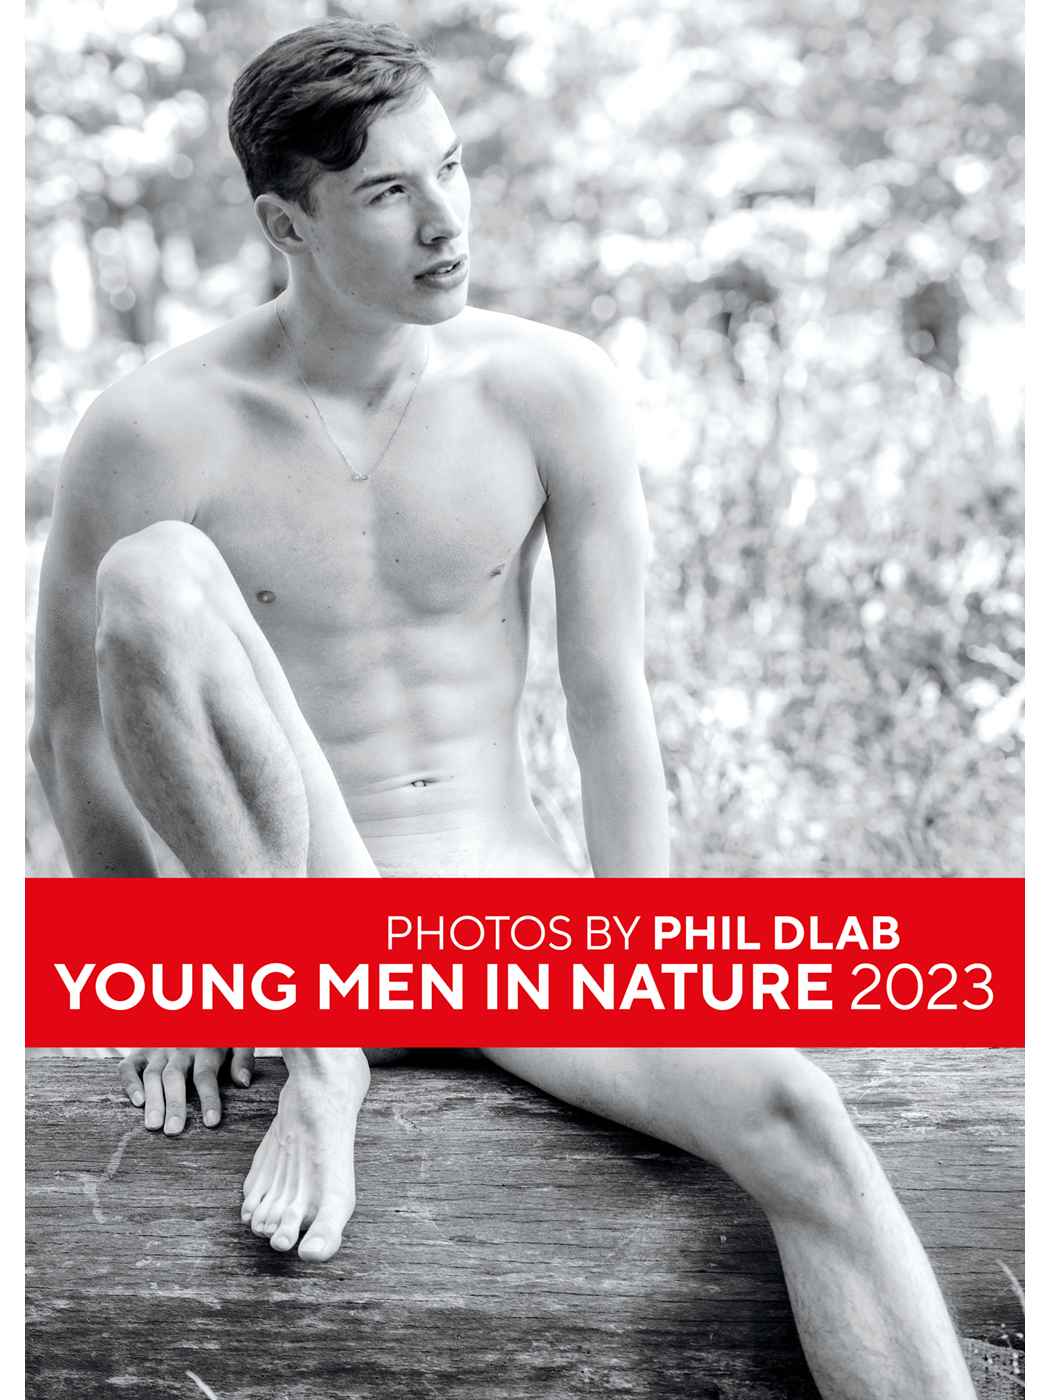 Dlab: Young Men in Nature | Kalender 2023 